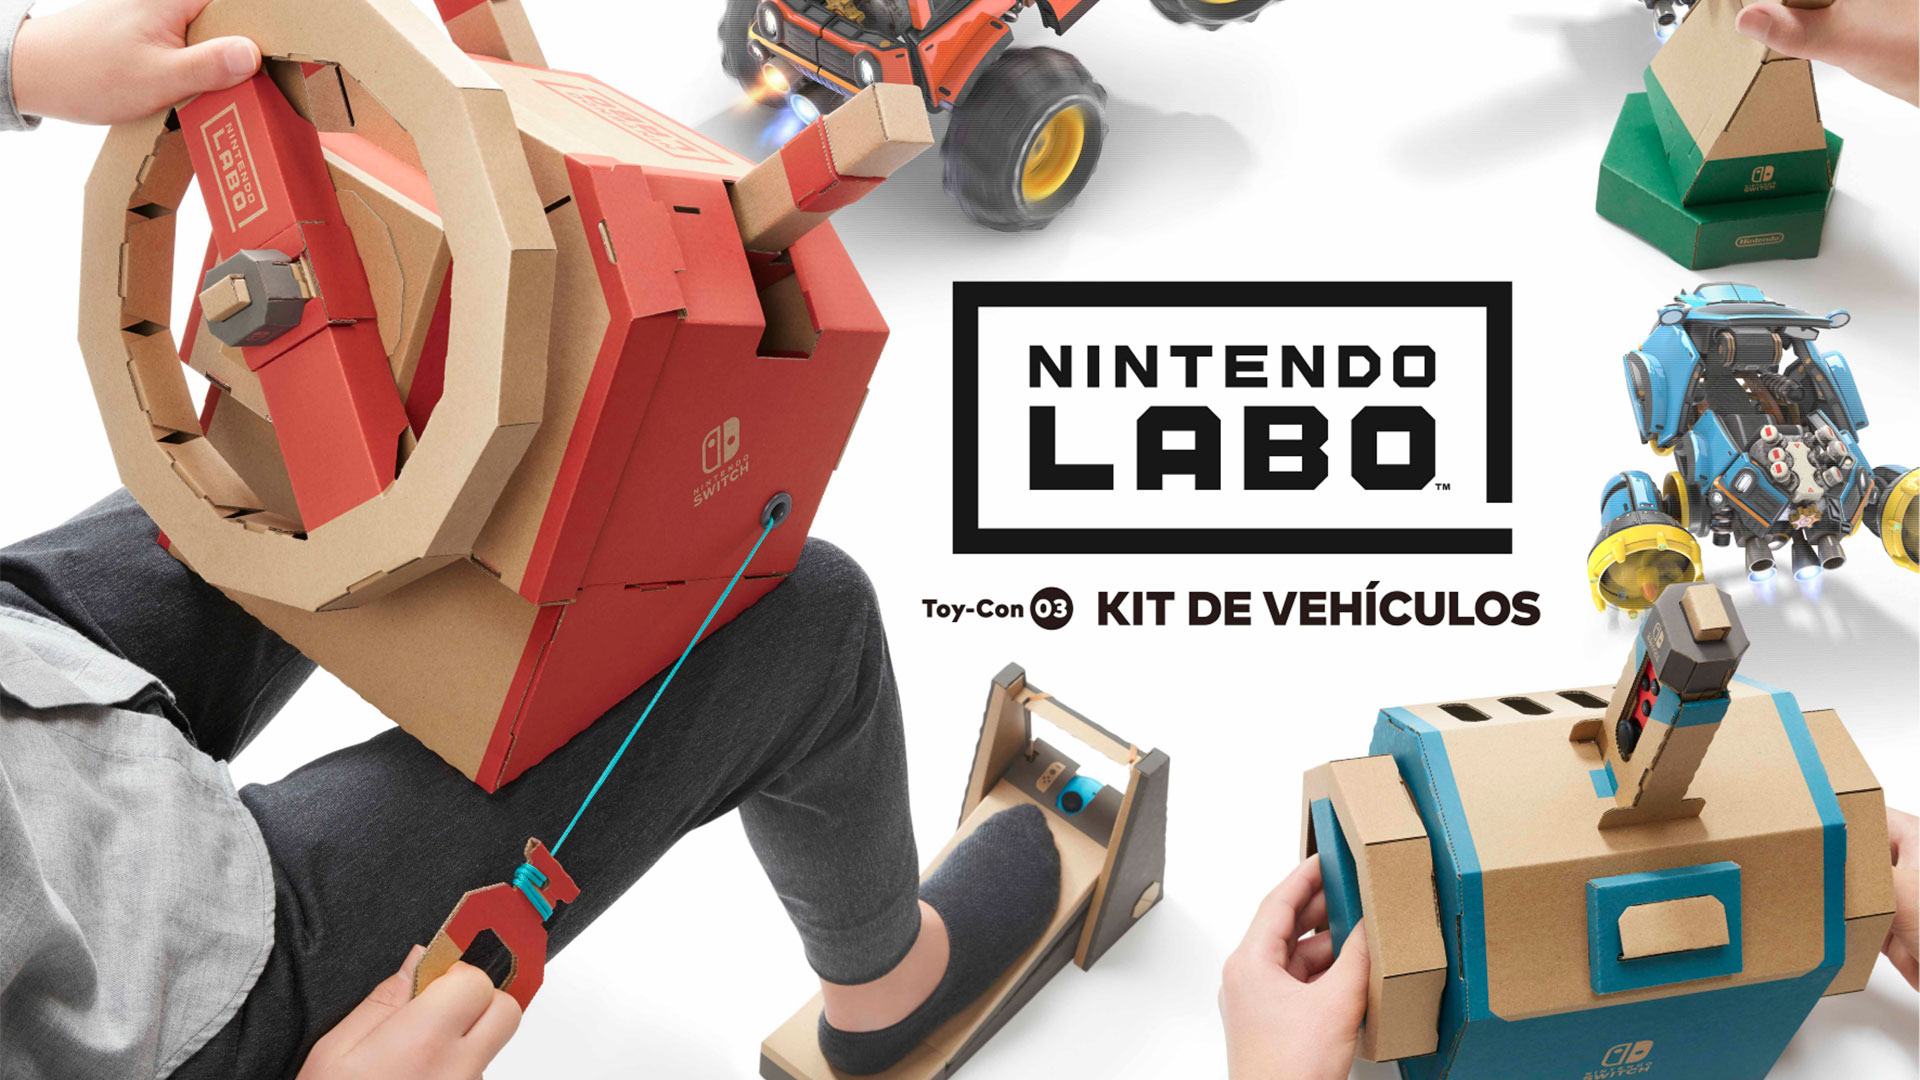 Nintendo Labo: kit de vehículos